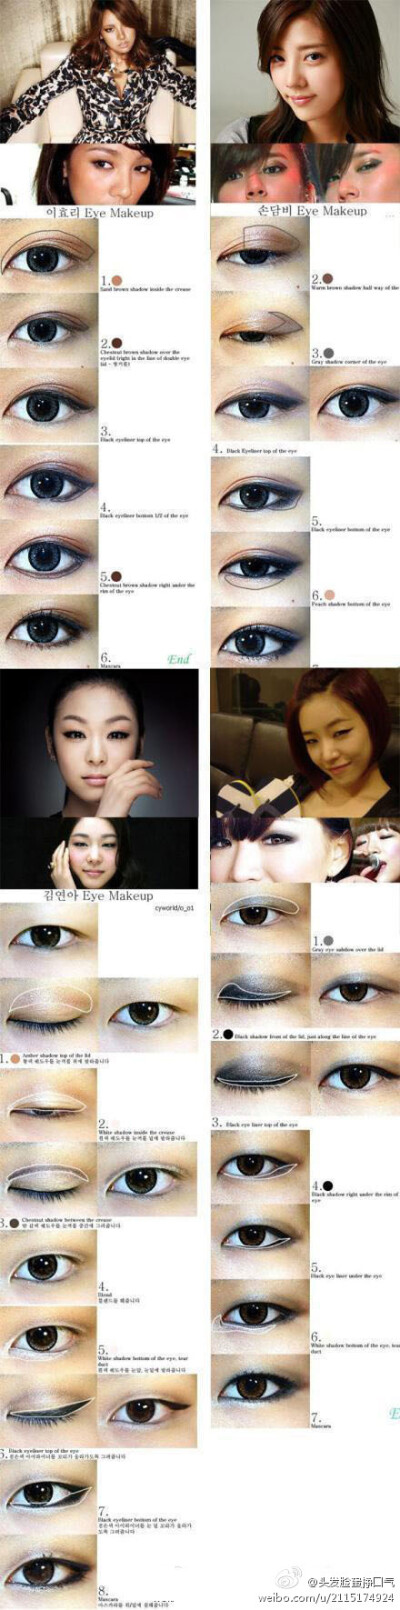 【手把手教你化韩国明星眼妆】让眼睛看起来更大、更明亮、更有妩媚感的韩妆